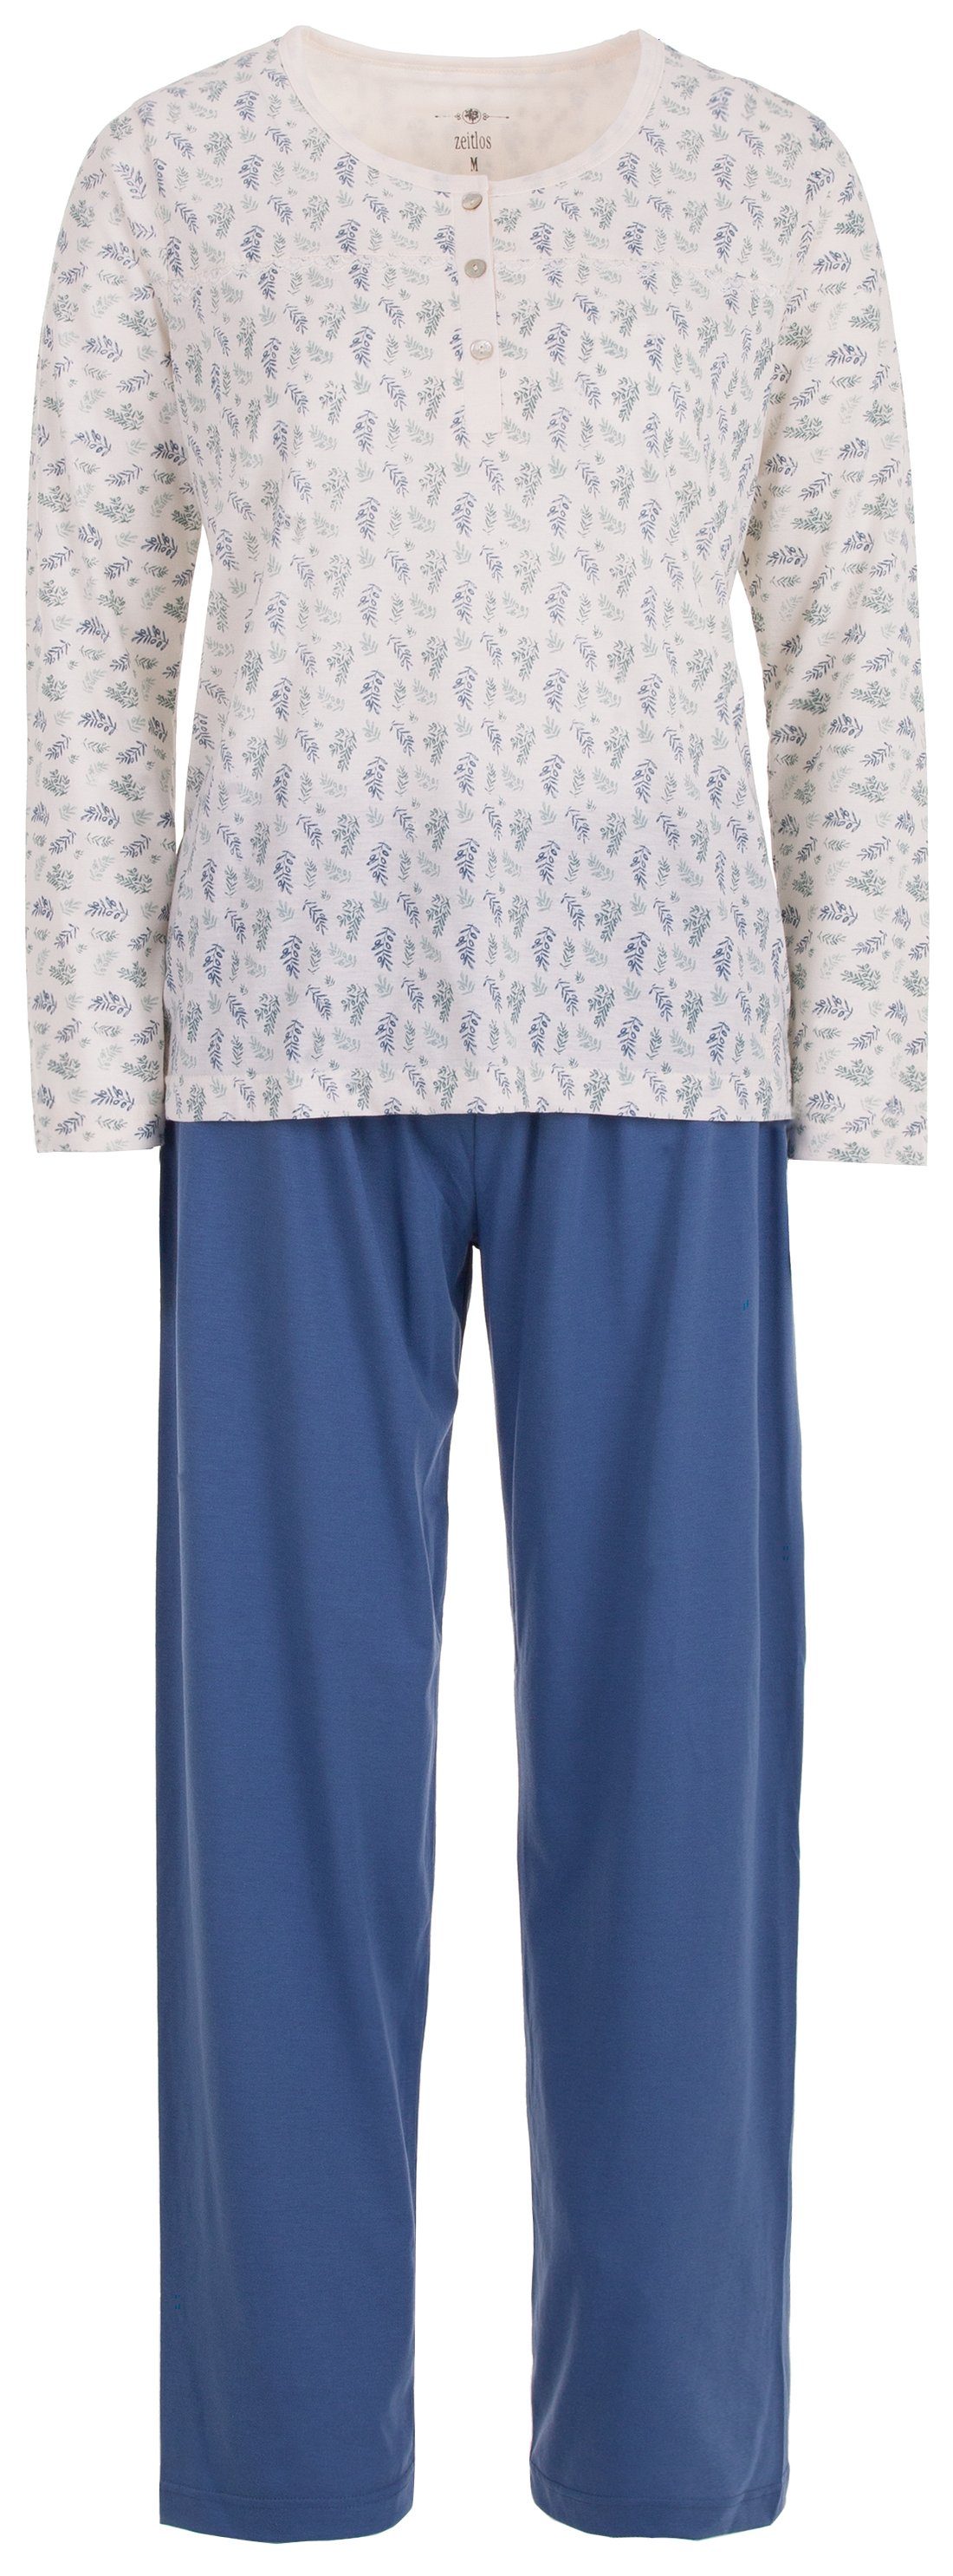 Schlafanzug Set - Langarm blau zeitlos Pyjama Zweige